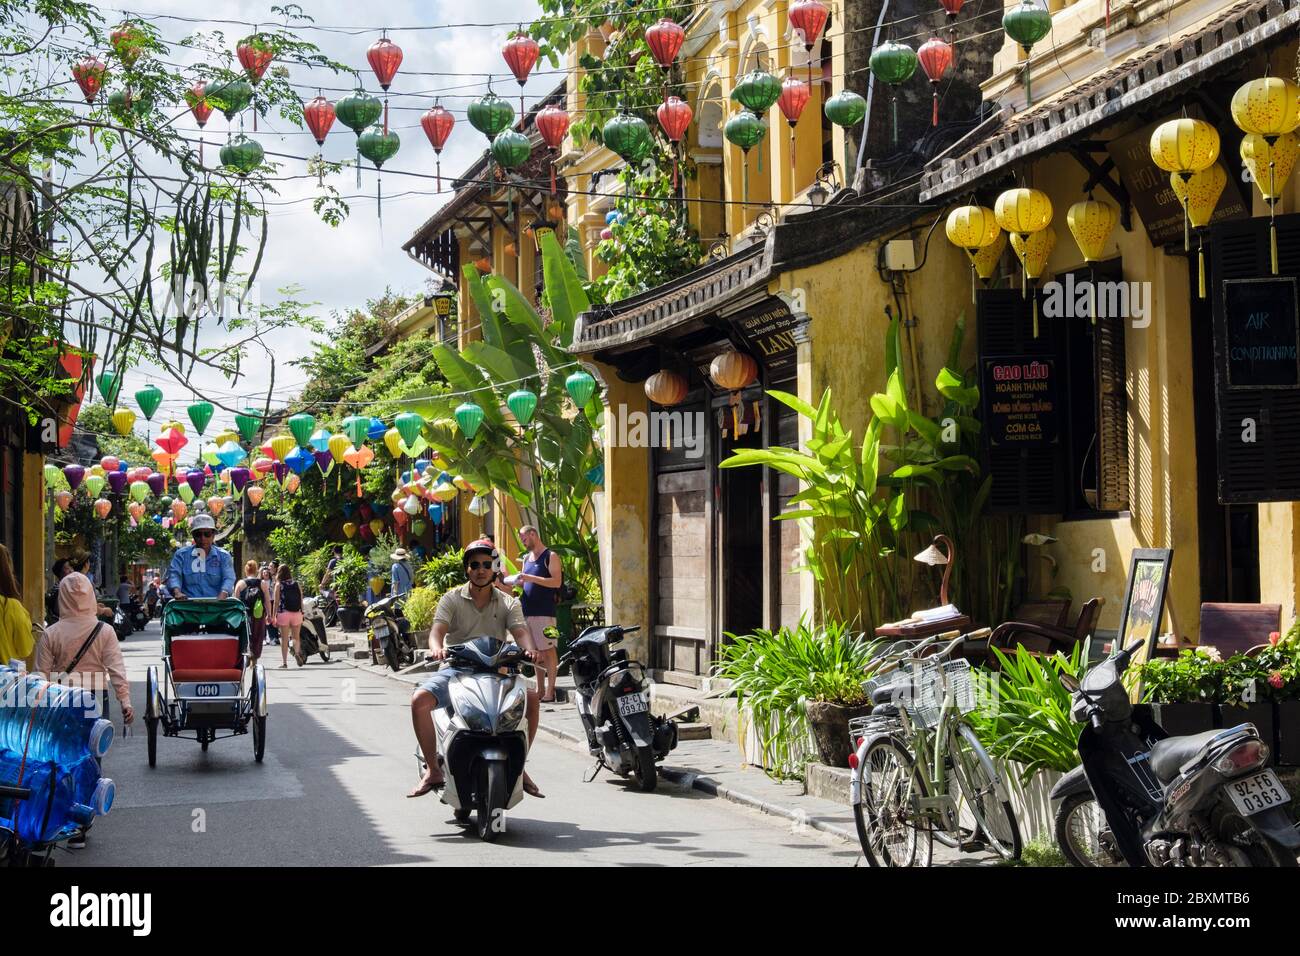 Lanternes surplombant une petite rue animée par des gens dans le vieux quartier de la ville historique. Hoi an, province de Quang Nam, Vietnam, Asie du Sud-est Banque D'Images